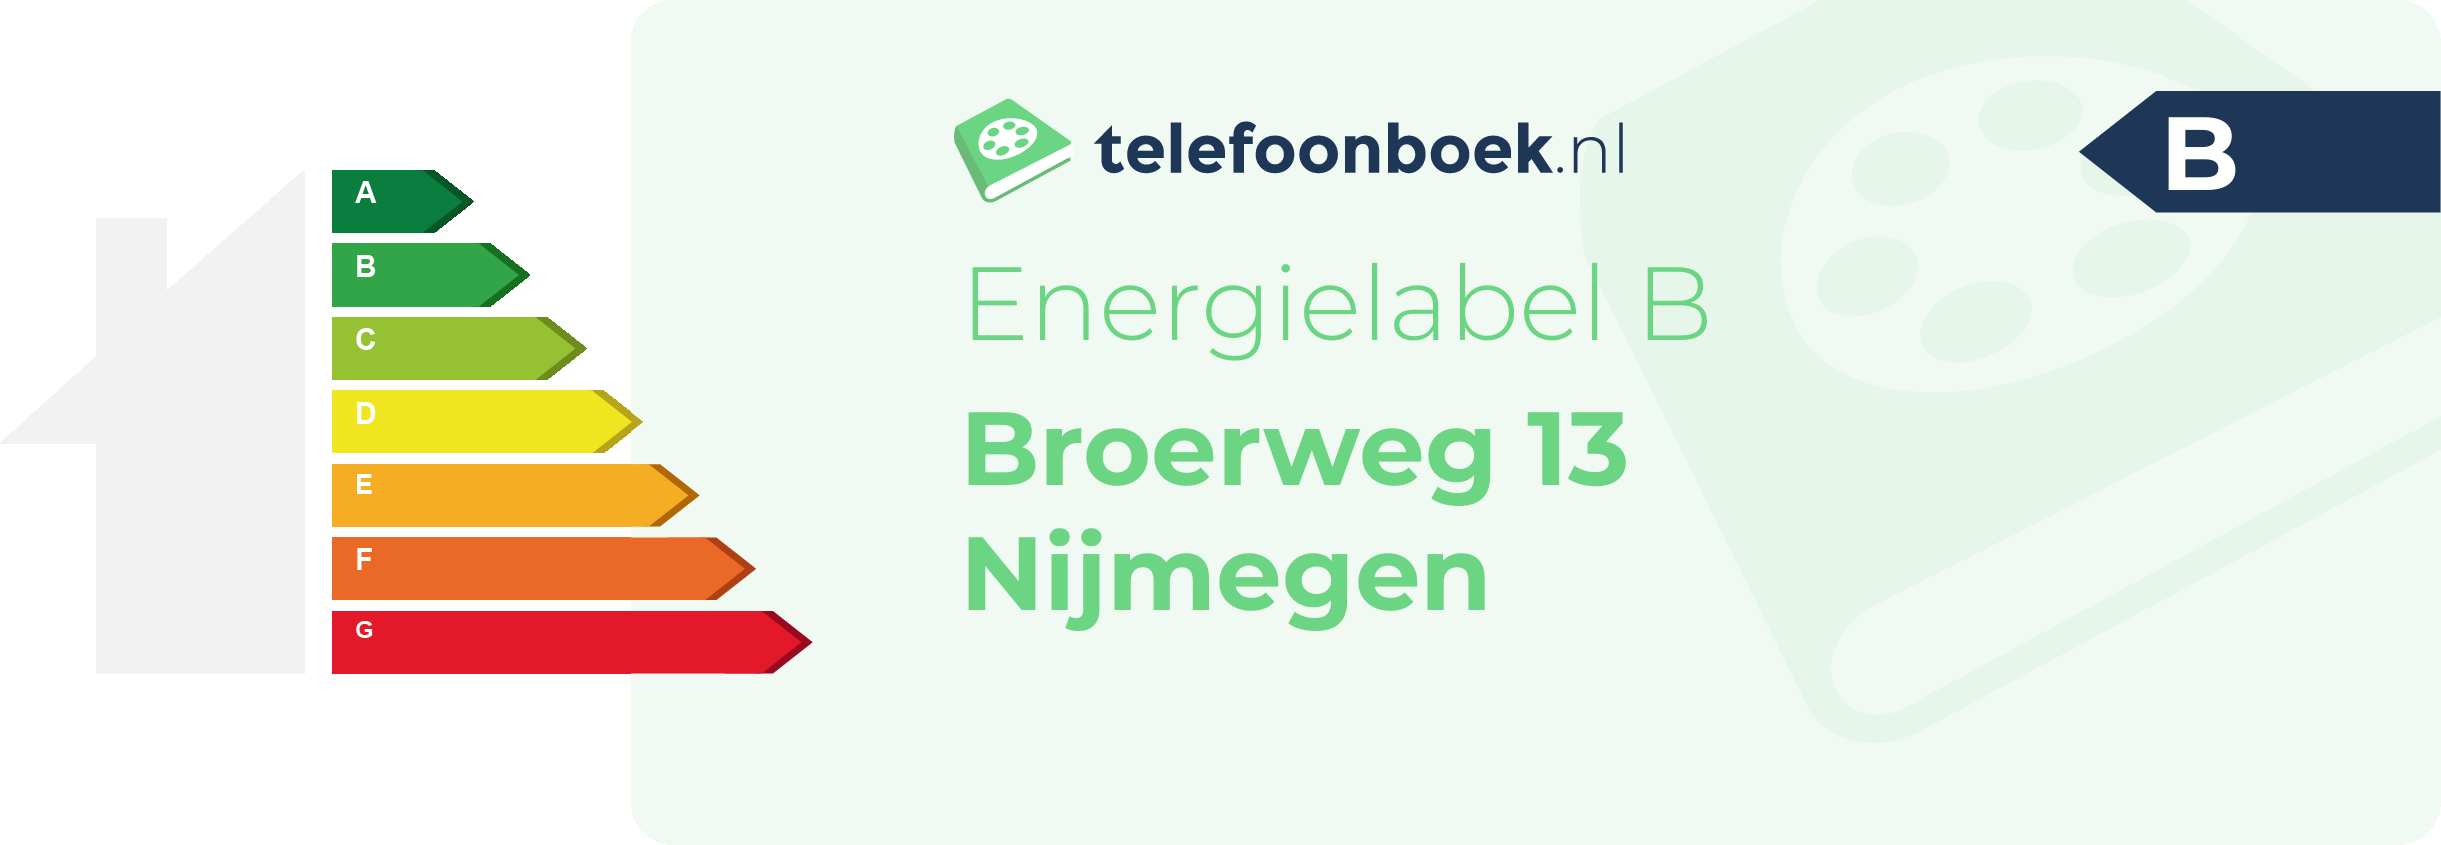 Energielabel Broerweg 13 Nijmegen